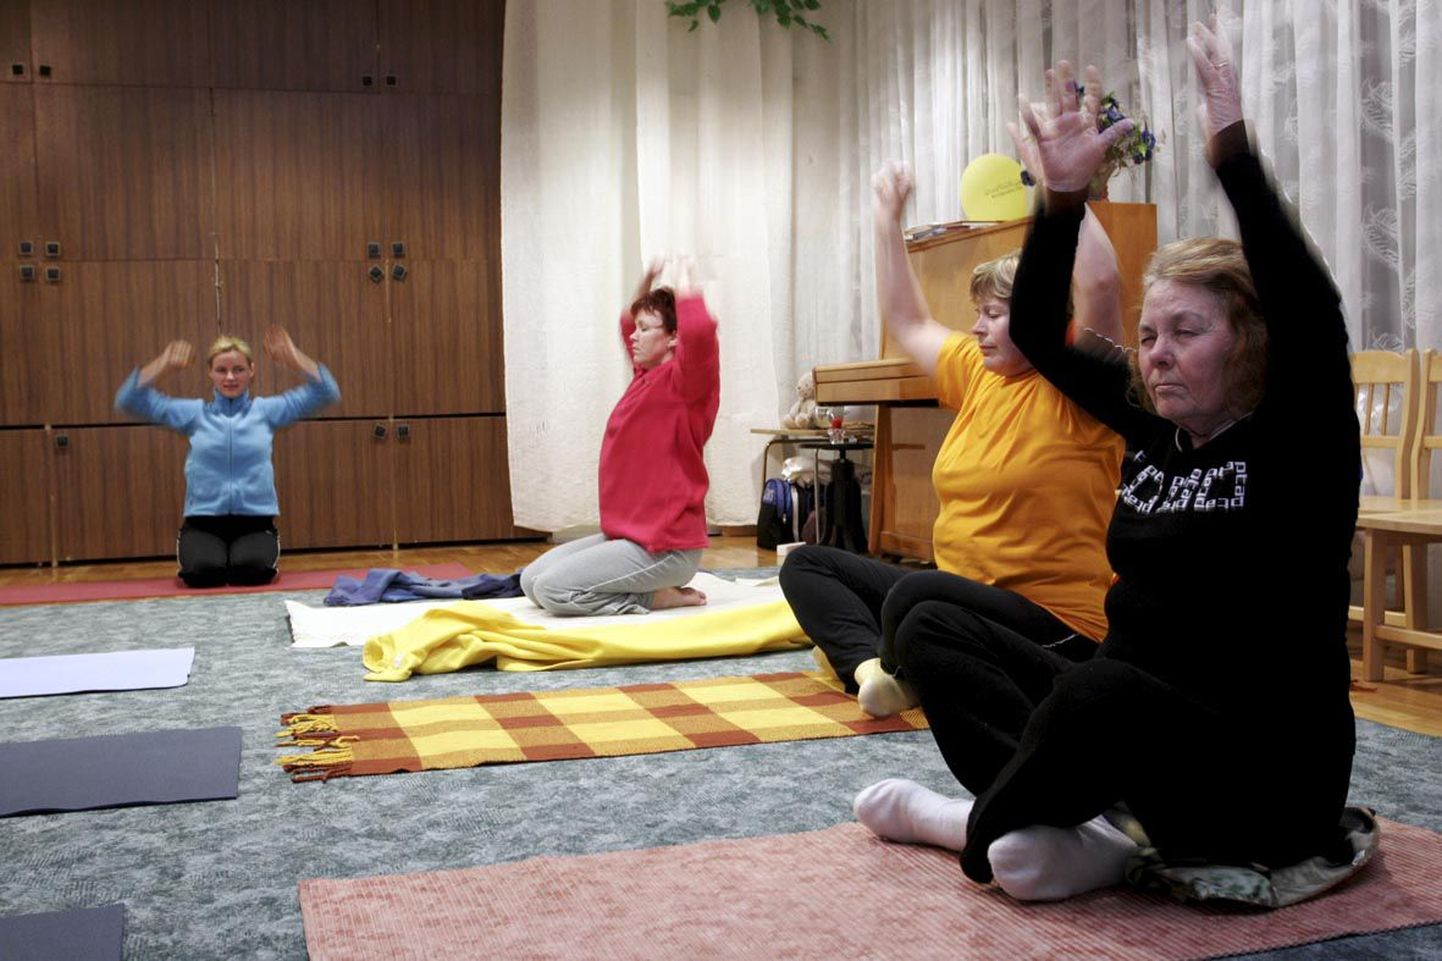 Kes on läbinud hingamistehnikate kursuse, saab edaspidi harjutamist jätkata näiteks Türil, kus Marika Toots (vasakul) joogatunni hingamisharjutustega lõpetab.